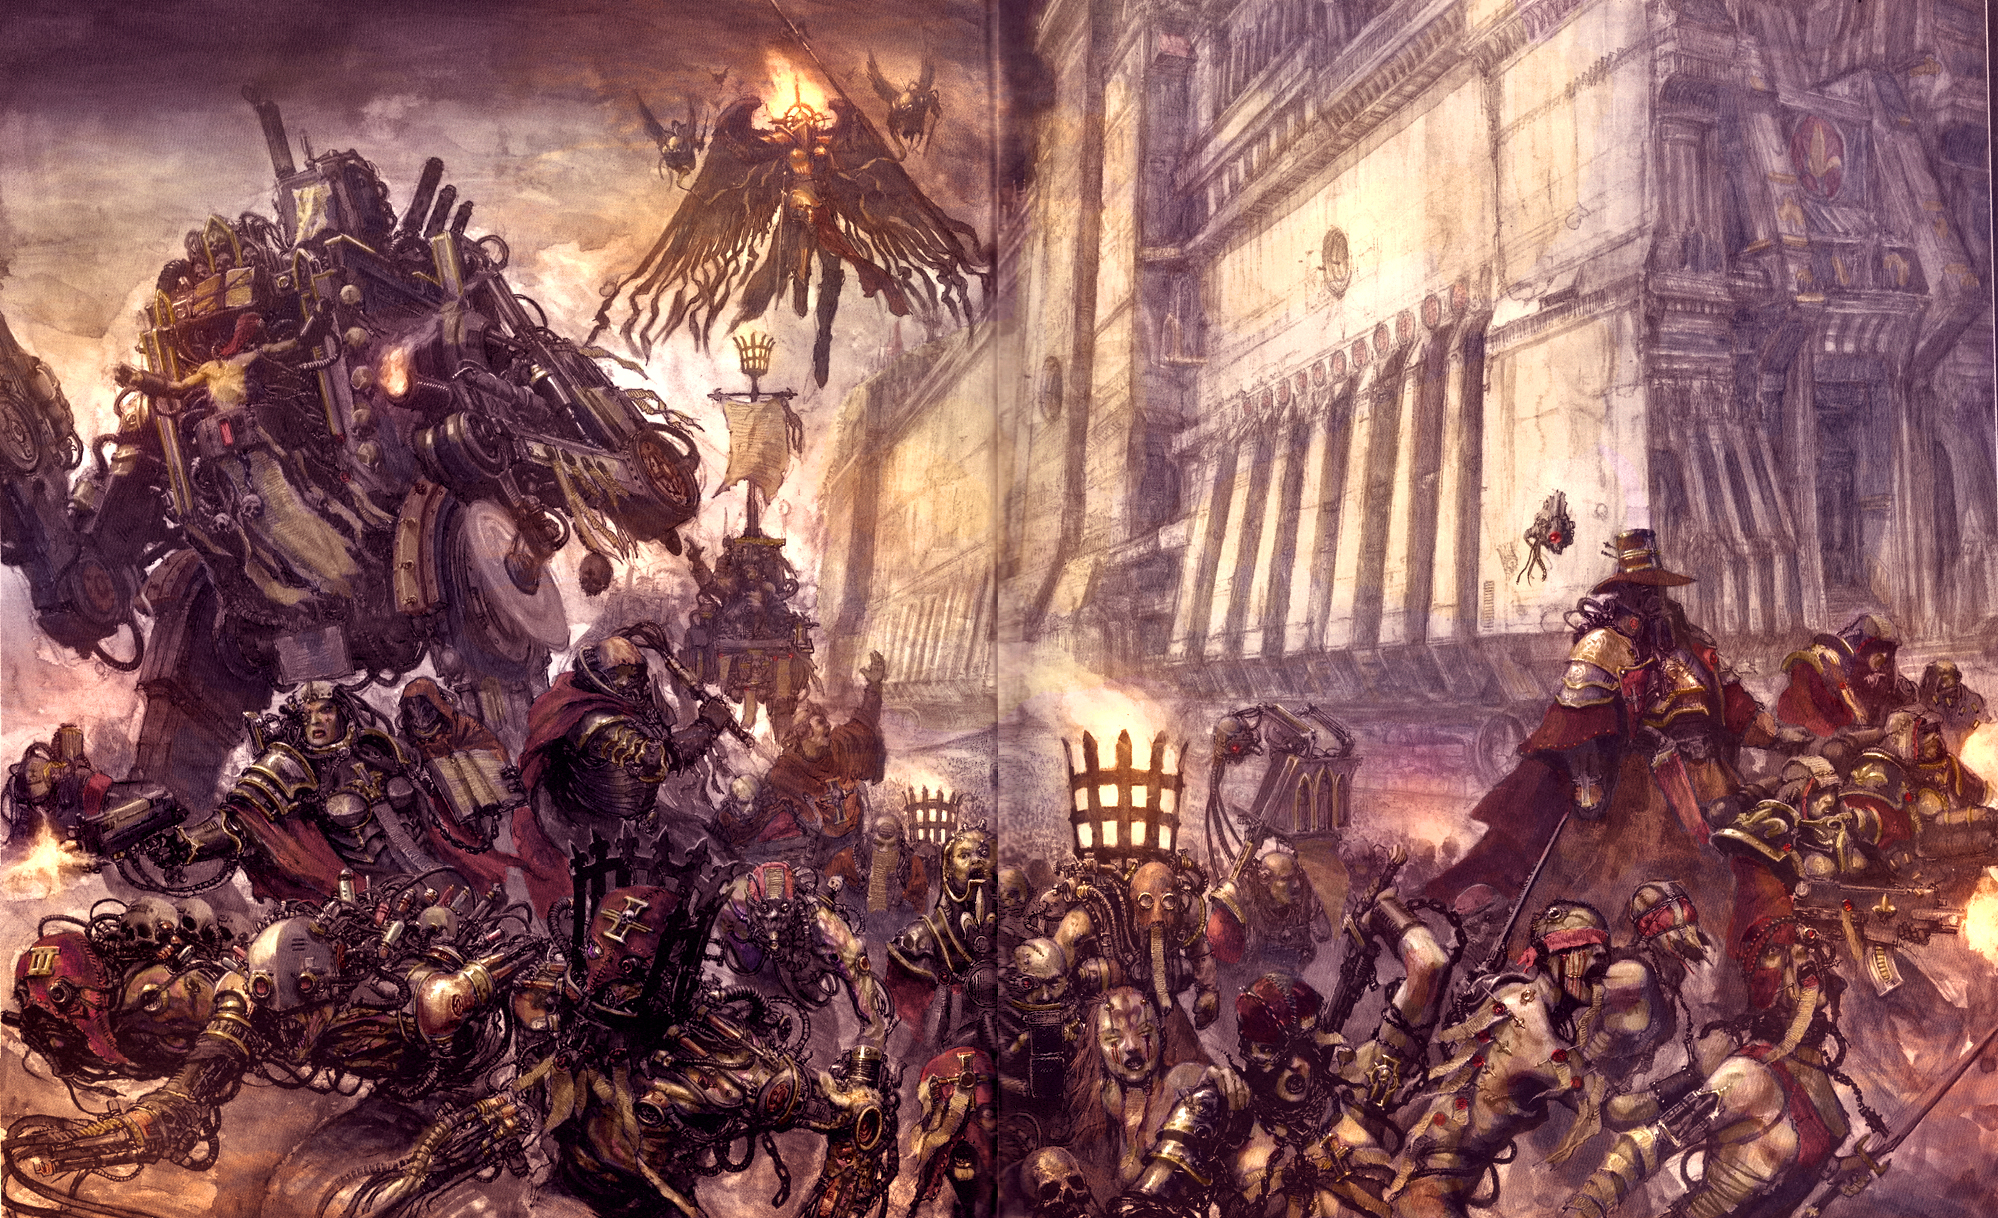 Résultat de recherche d'images pour "inquisition warhammer 40000"